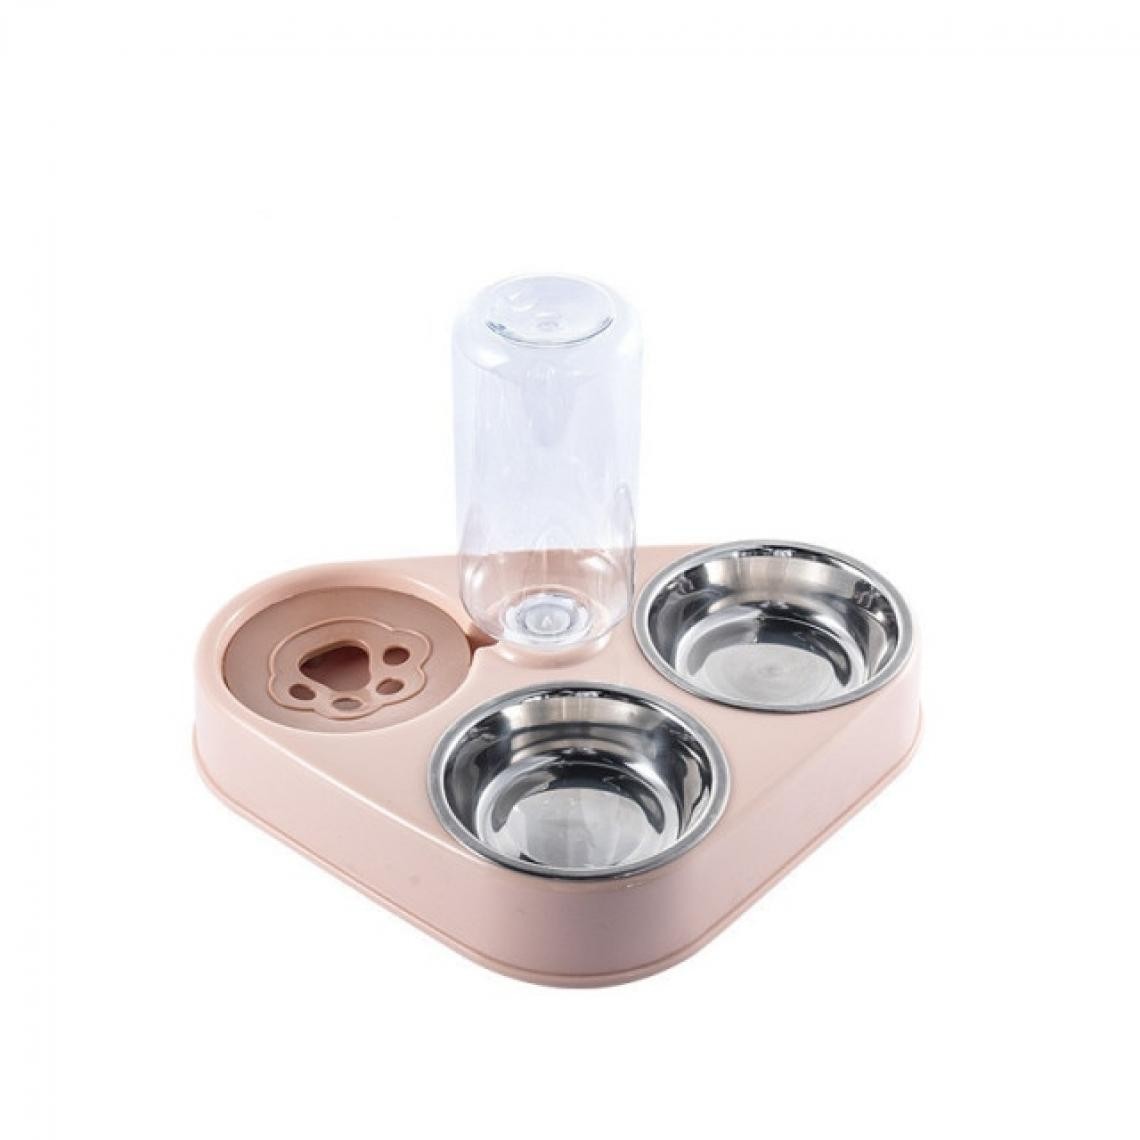 Universal - 3 bols de nourriture pour chiens et chats avec bouteilles, fontaines d'eau automatiques, portables, durables, en acier inoxydable, 3 bols de fournitures pour animaux de compagnie |(Rose) - Gamelle pour chat